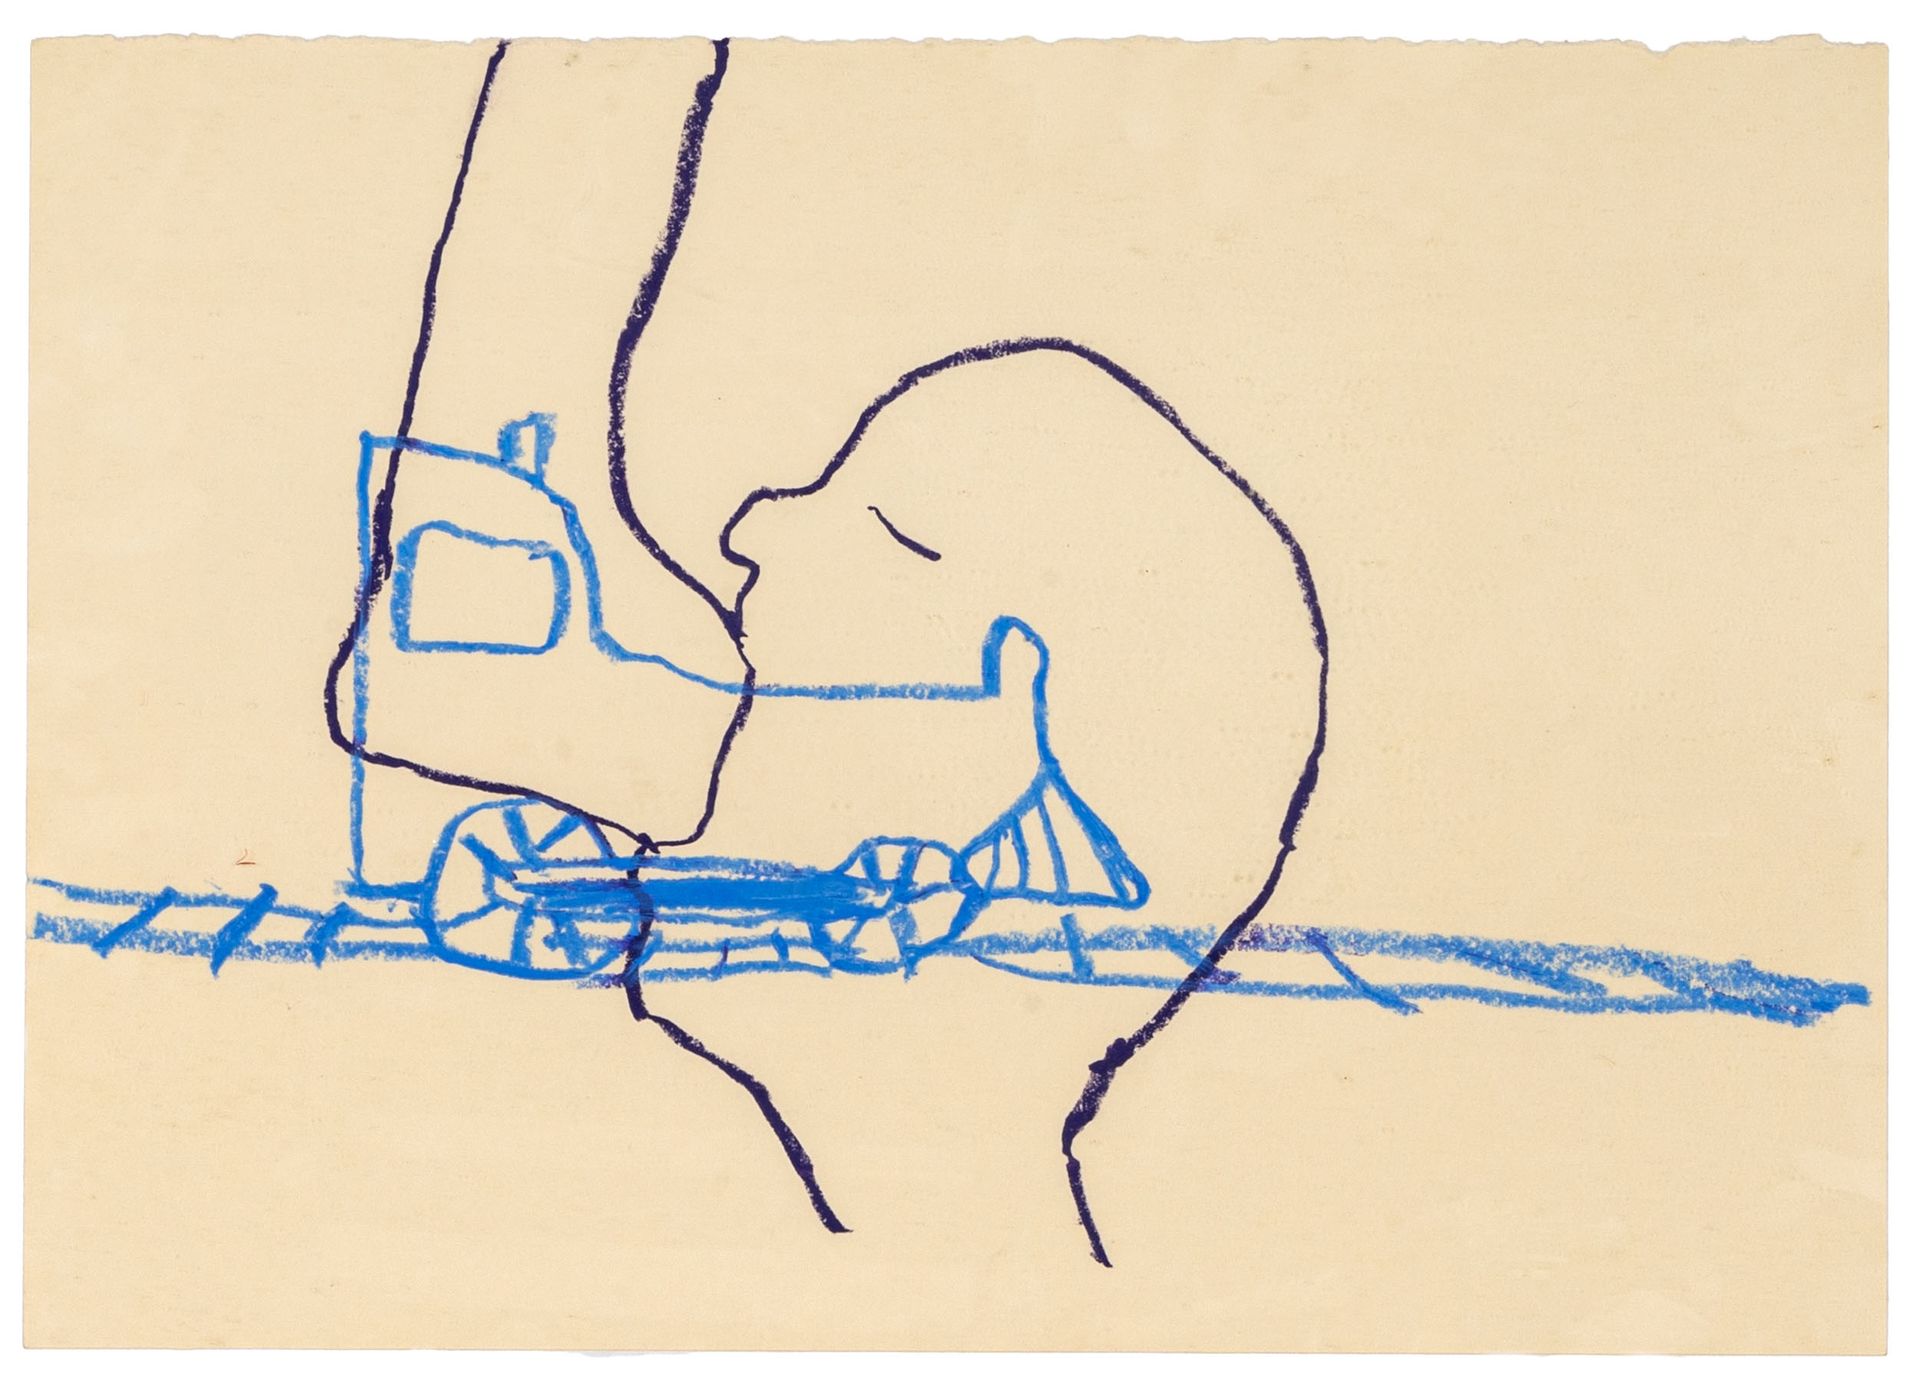 RYAN MENDOZA RYAN MENDOZA
(1971)
Untitled
Wax crayon on paper
35 x 50 cm
Signed &hellip;